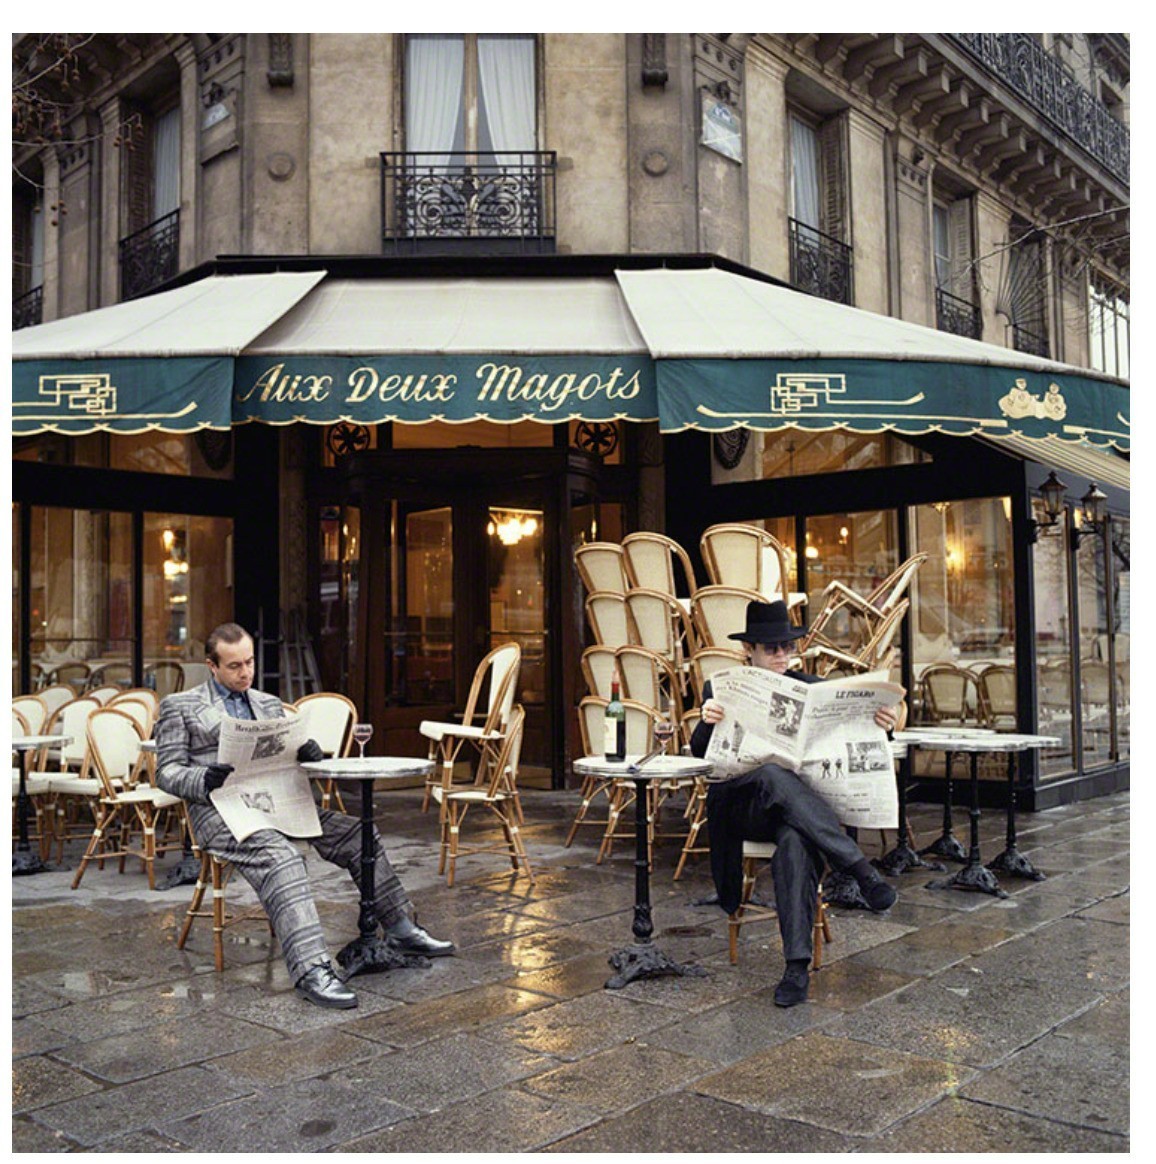 Элтон Джон и Берни Топин у знаменитого кафе Дё маго в Париже, 1980. Фотограф Терри ОНил